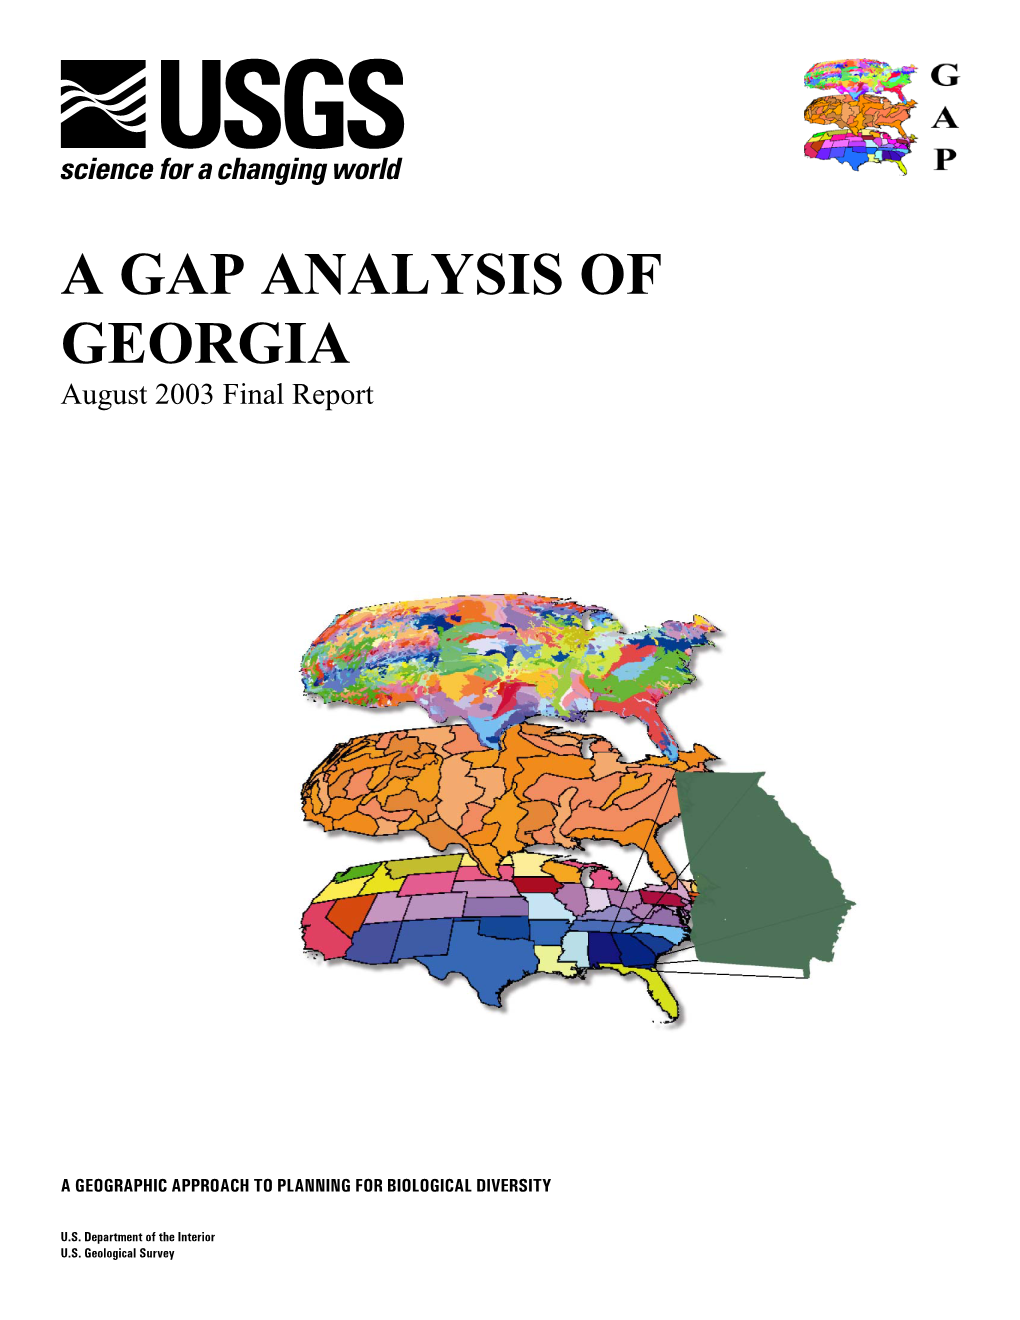 A Gap Analysis of Georgia